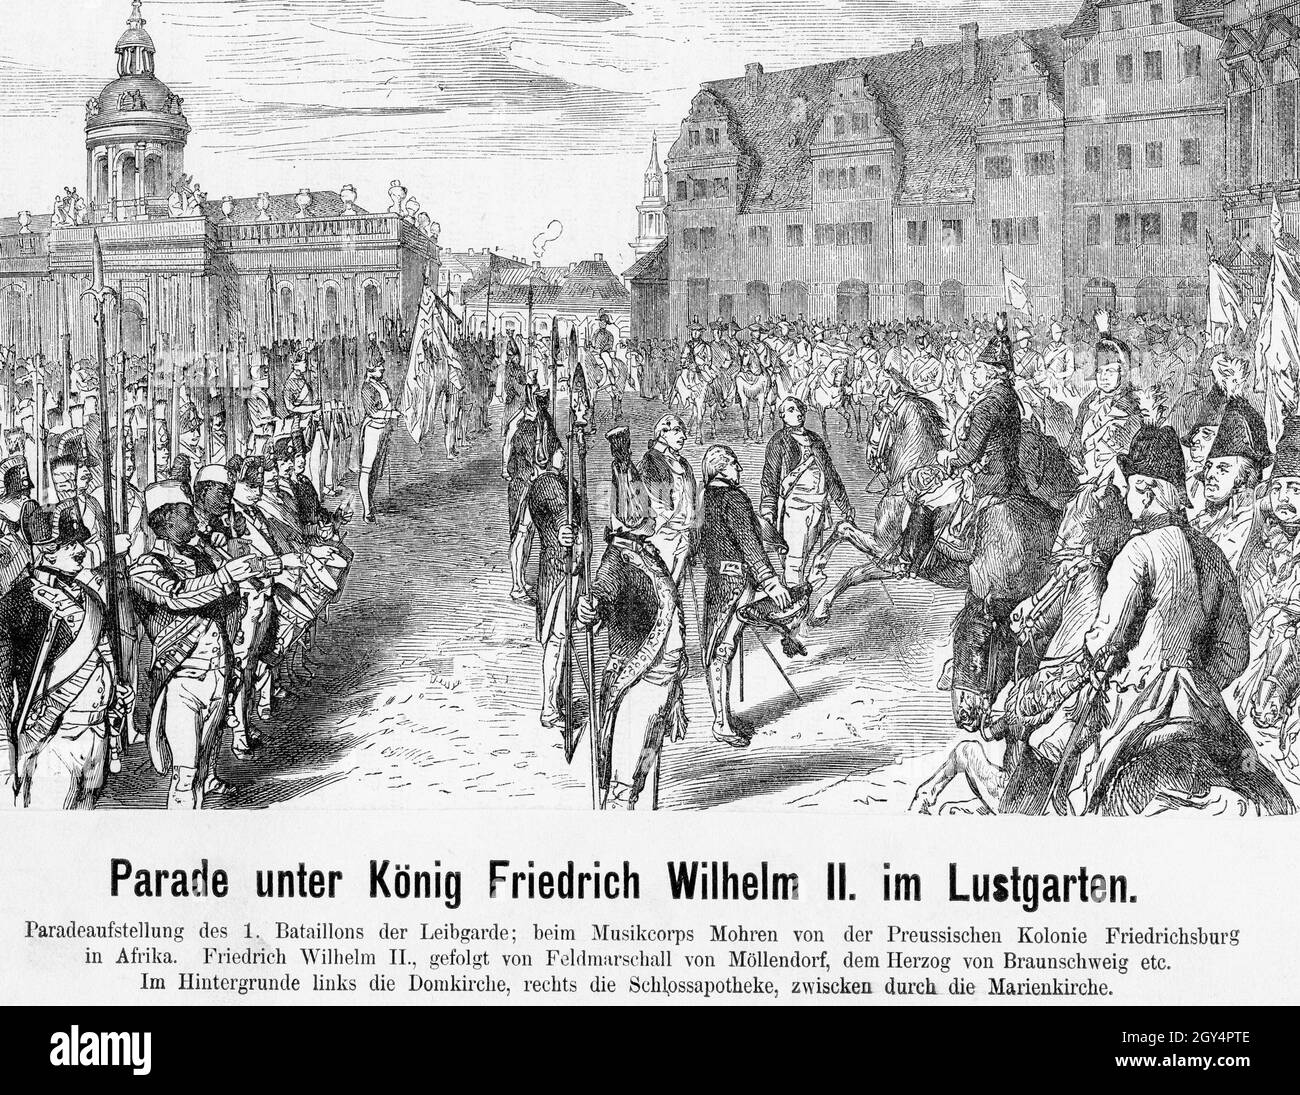 Sous les yeux du roi de Prusse Frederick William II (à droite, assis sur un cheval), une parade a eu lieu dans le Lustgarten.Le 1er Bataillon des gardes de vie est en formation de parade.Les Noirs de la colonie prussienne de Friedrichsburg (à gauche sur l'image) jouent avec le corps musical.Le maréchal von Möllendorf et le duc de Brunswick se trouvent à droite du roi.En arrière-plan, la Domkirche (ancienne cathédrale de Berlin) est visible sur la gauche, la Marienkirche au milieu et la Schlossapotheke sur la droite.Dessin non daté, fabriqué autour de 1790.[traduction automatique] Banque D'Images